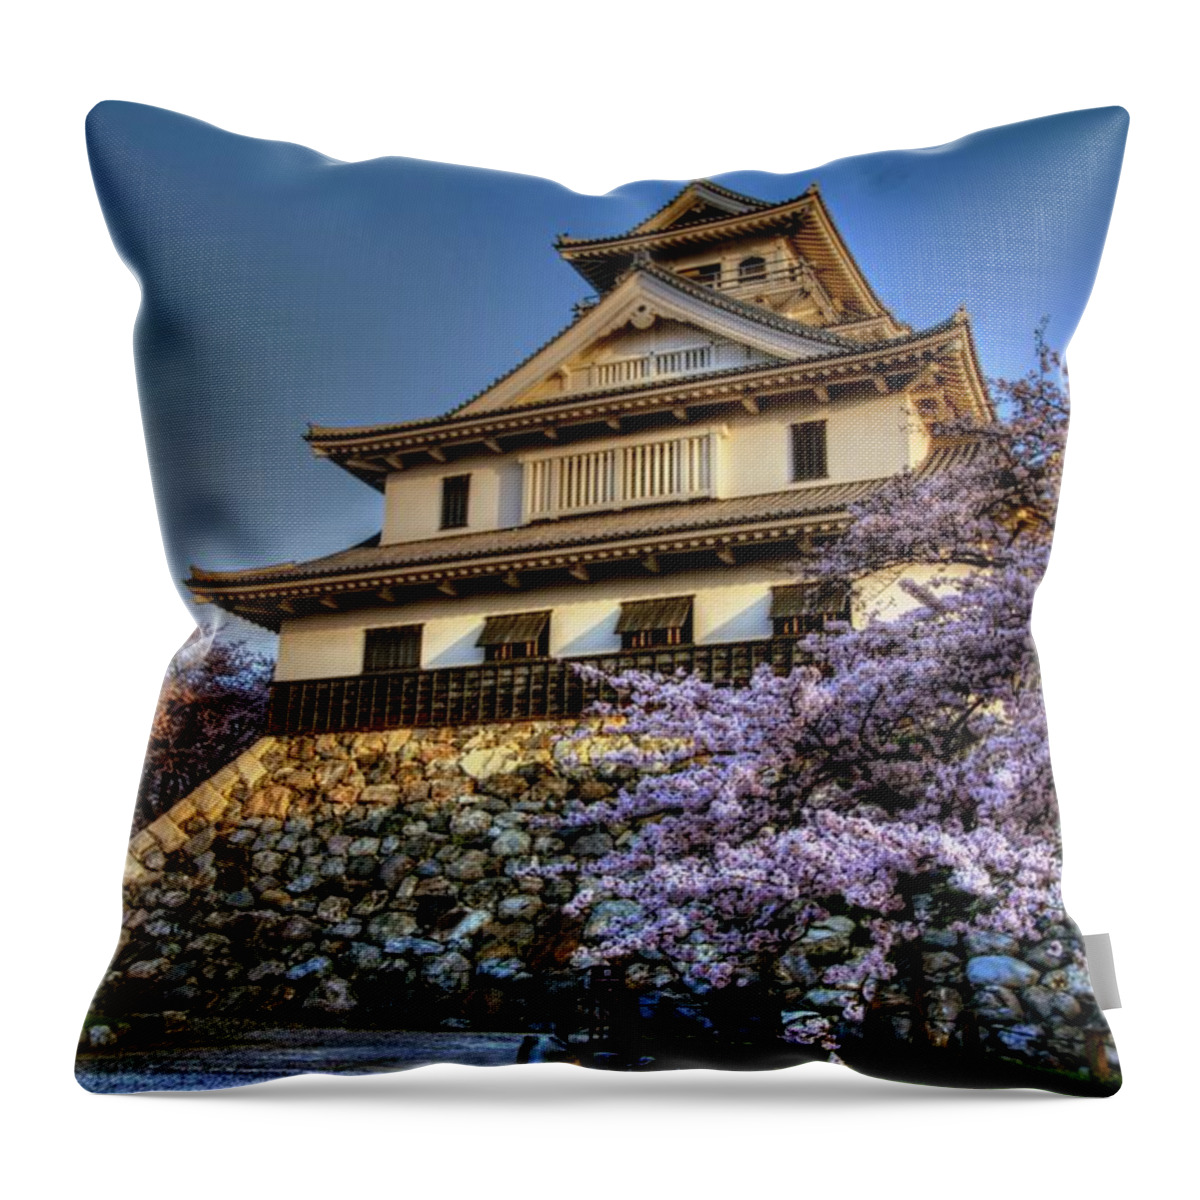 Nagahama Japan Throw Pillow featuring the photograph Nagahama Japan #18 by Paul James Bannerman